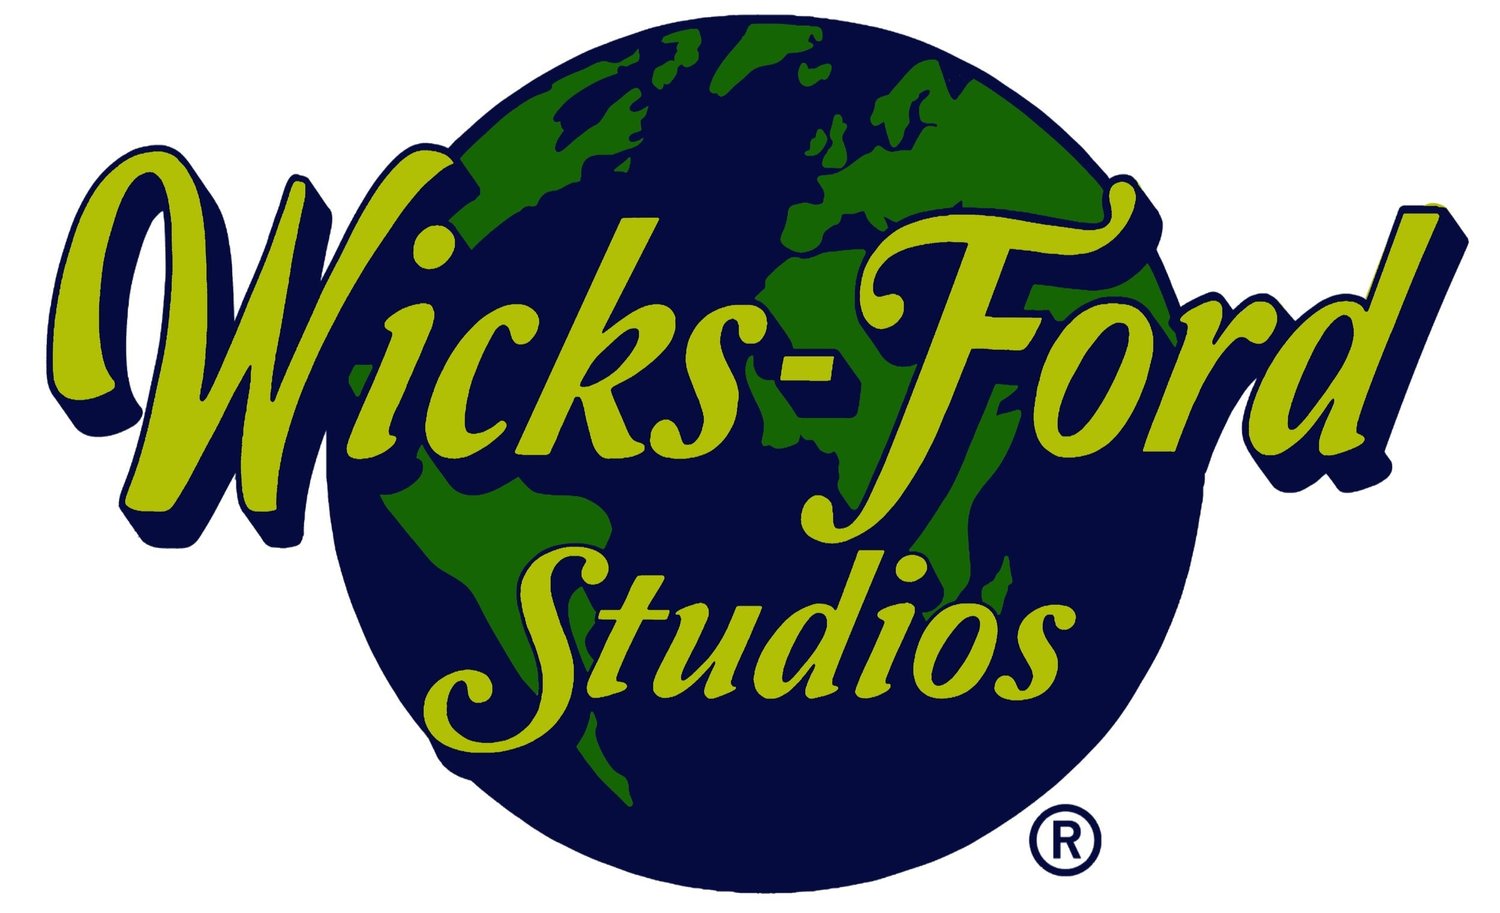 Wicks-Ford Studios